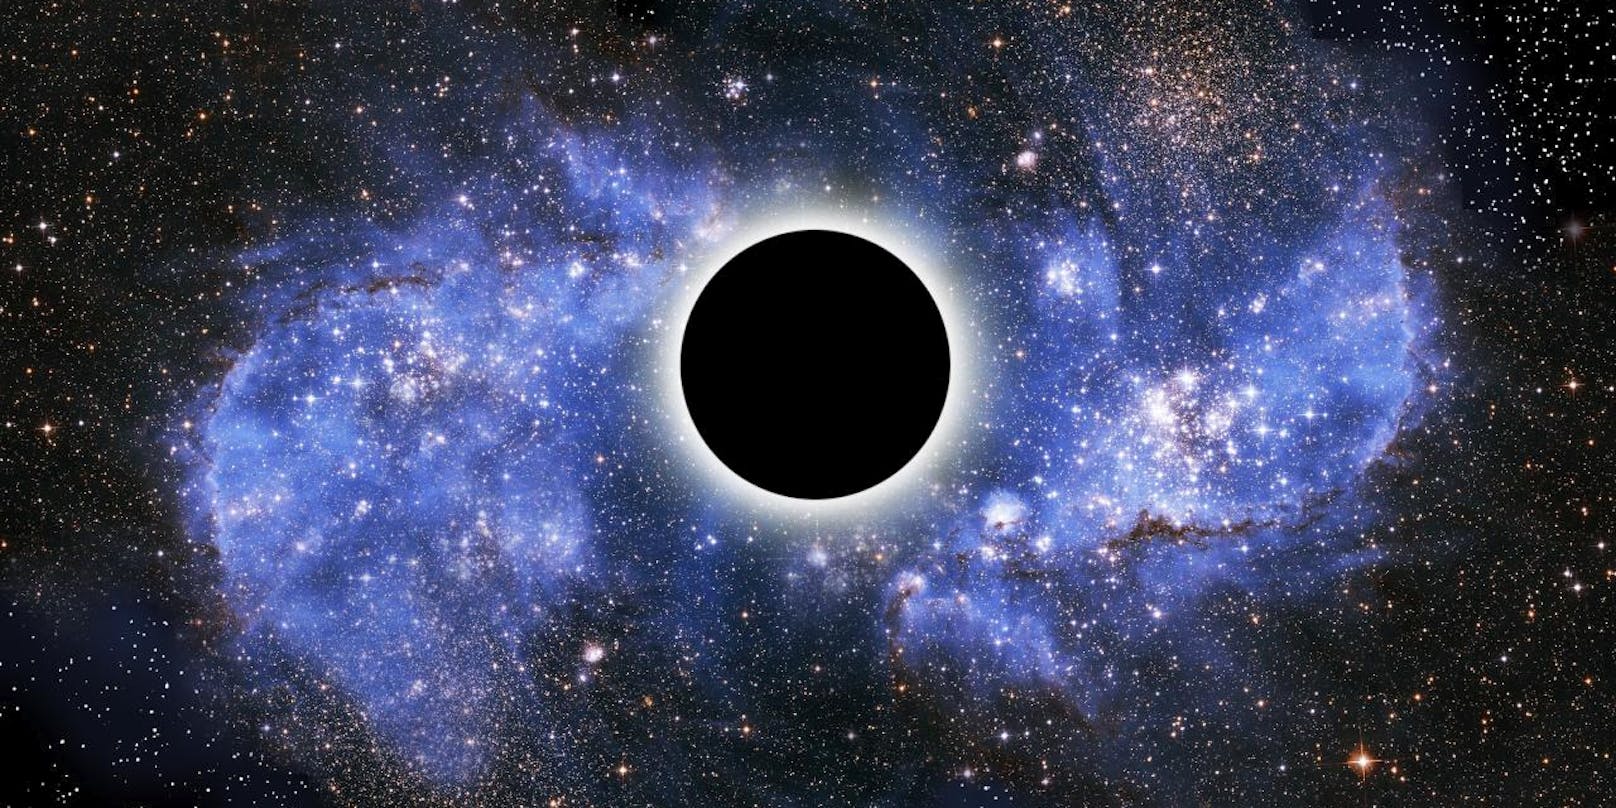 Ein Schwarzes Loch ist ein Objekt, dessen Masse auf ein extrem kleines Volumen, eine sogenannte Singularität, konzentriert ist. Sie erzeugt in ihrer unmittelbaren Umgebung eine so starke Gravitation, dass nicht einmal Licht von dort entkommen kann. Die äußere Grenze dieses Bereiches wird Ereignishorizont genannt. Innerhalb eines Ereignishorizonts kann sich nichts von der Singularität entfernen.